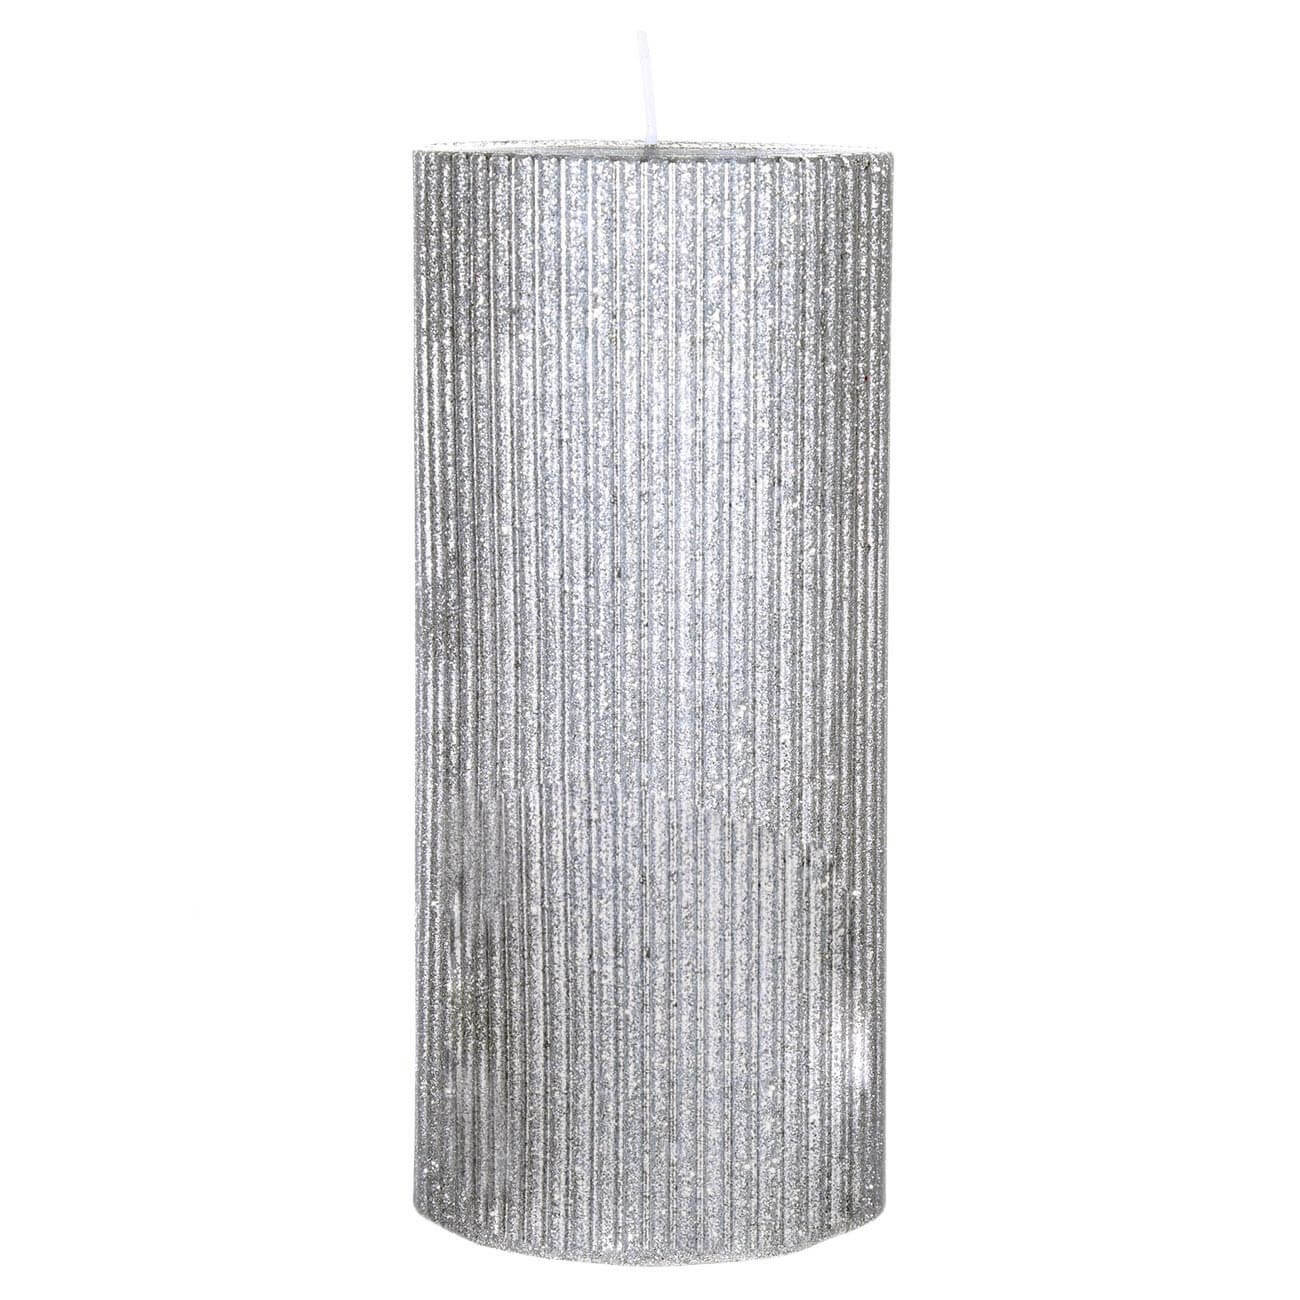 Свеча, 15 см, цилиндрическая, серебристая с блестками, Грани, Metallic glow изображение № 1